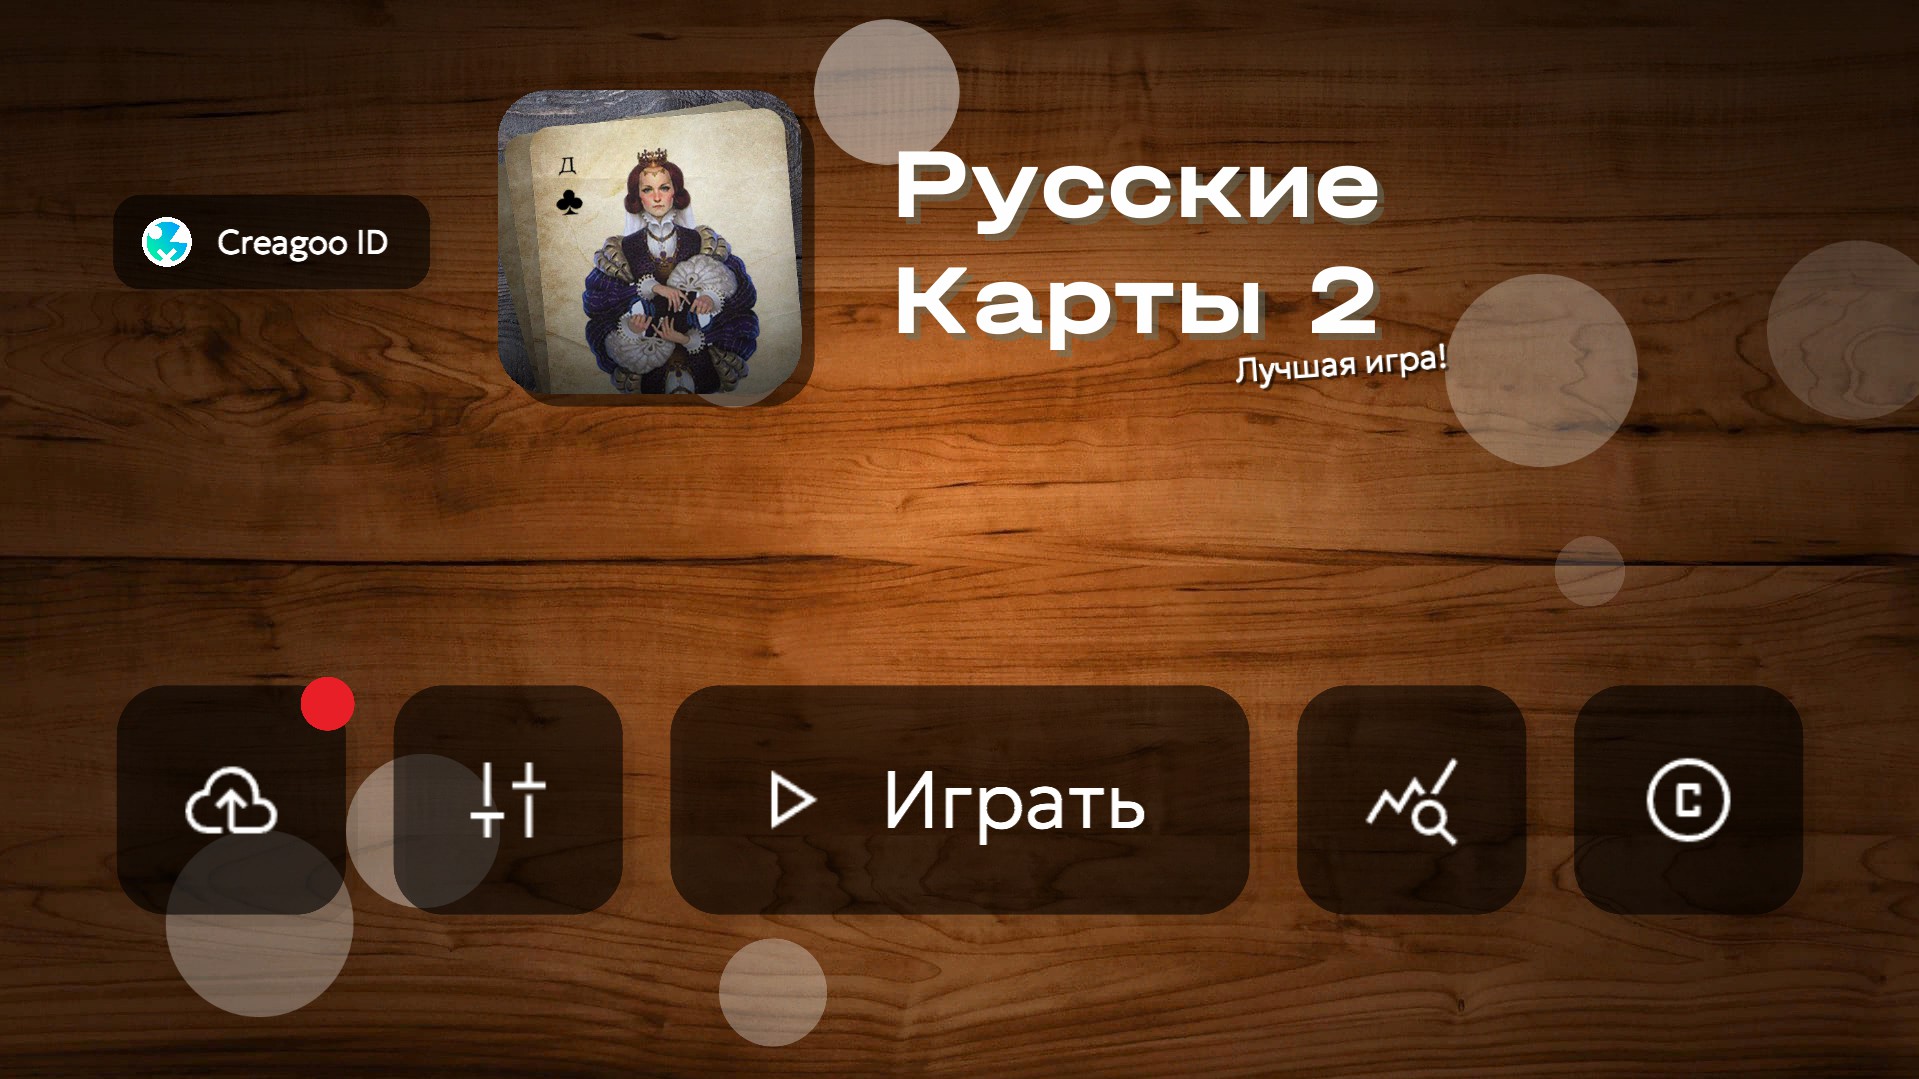 Скриншот игры Русские Карты 2